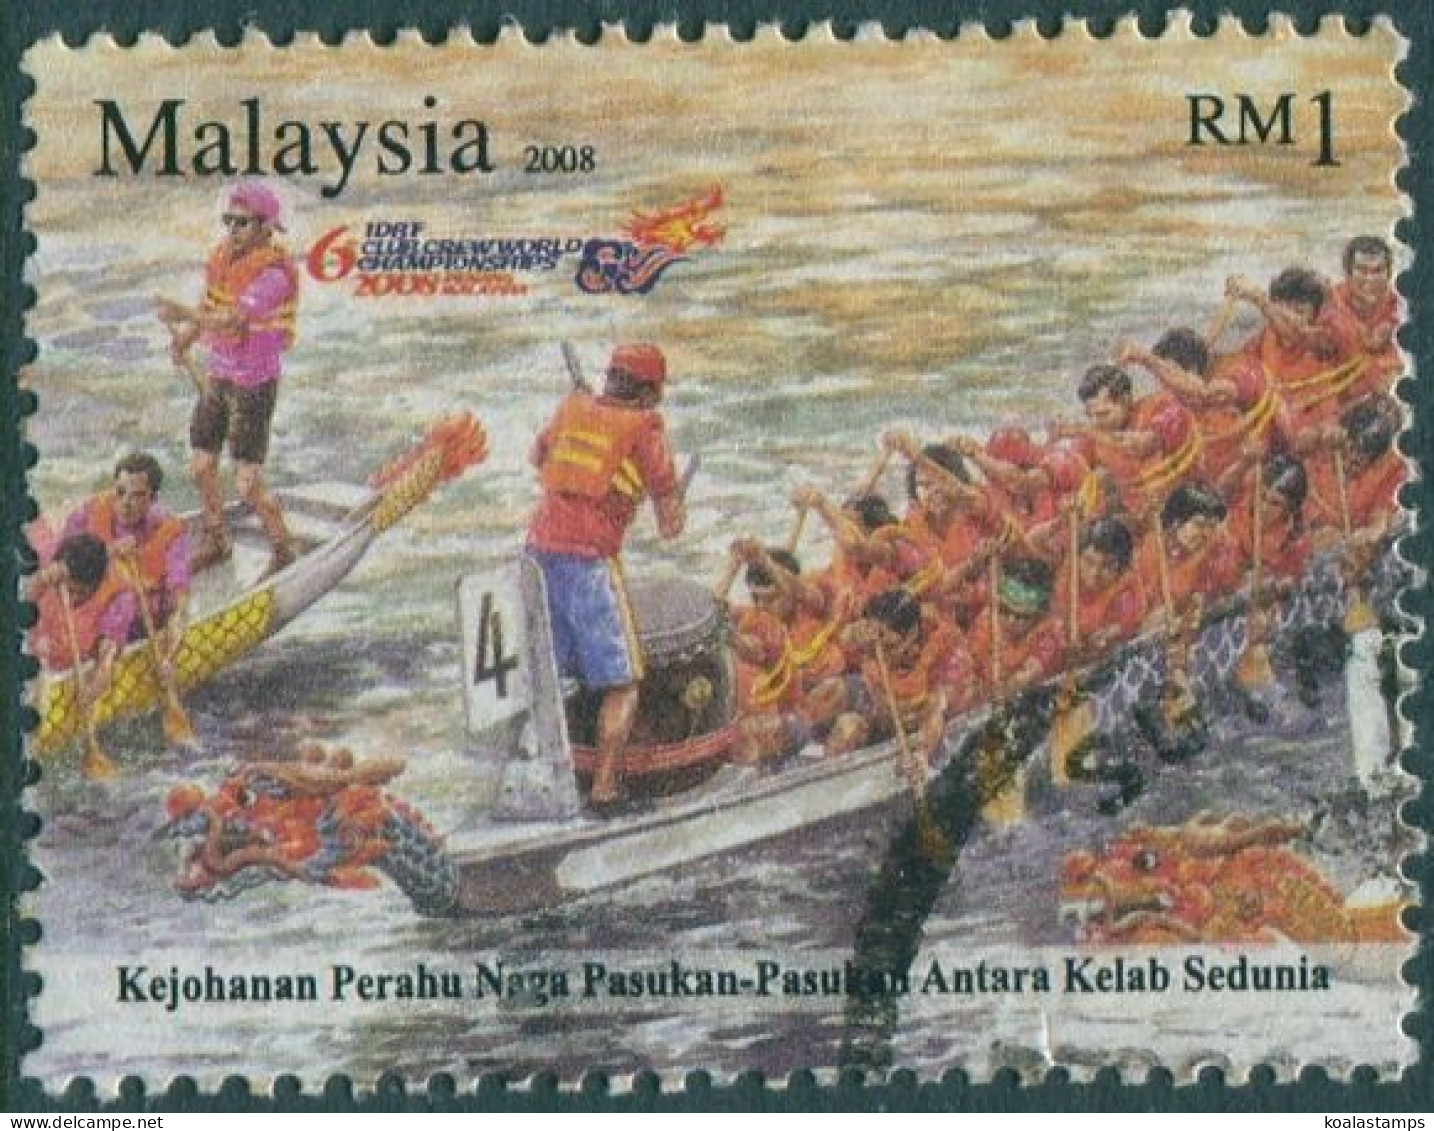 Malaysia 2008 SG1498 $1 Dragon Boats FU - Malasia (1964-...)